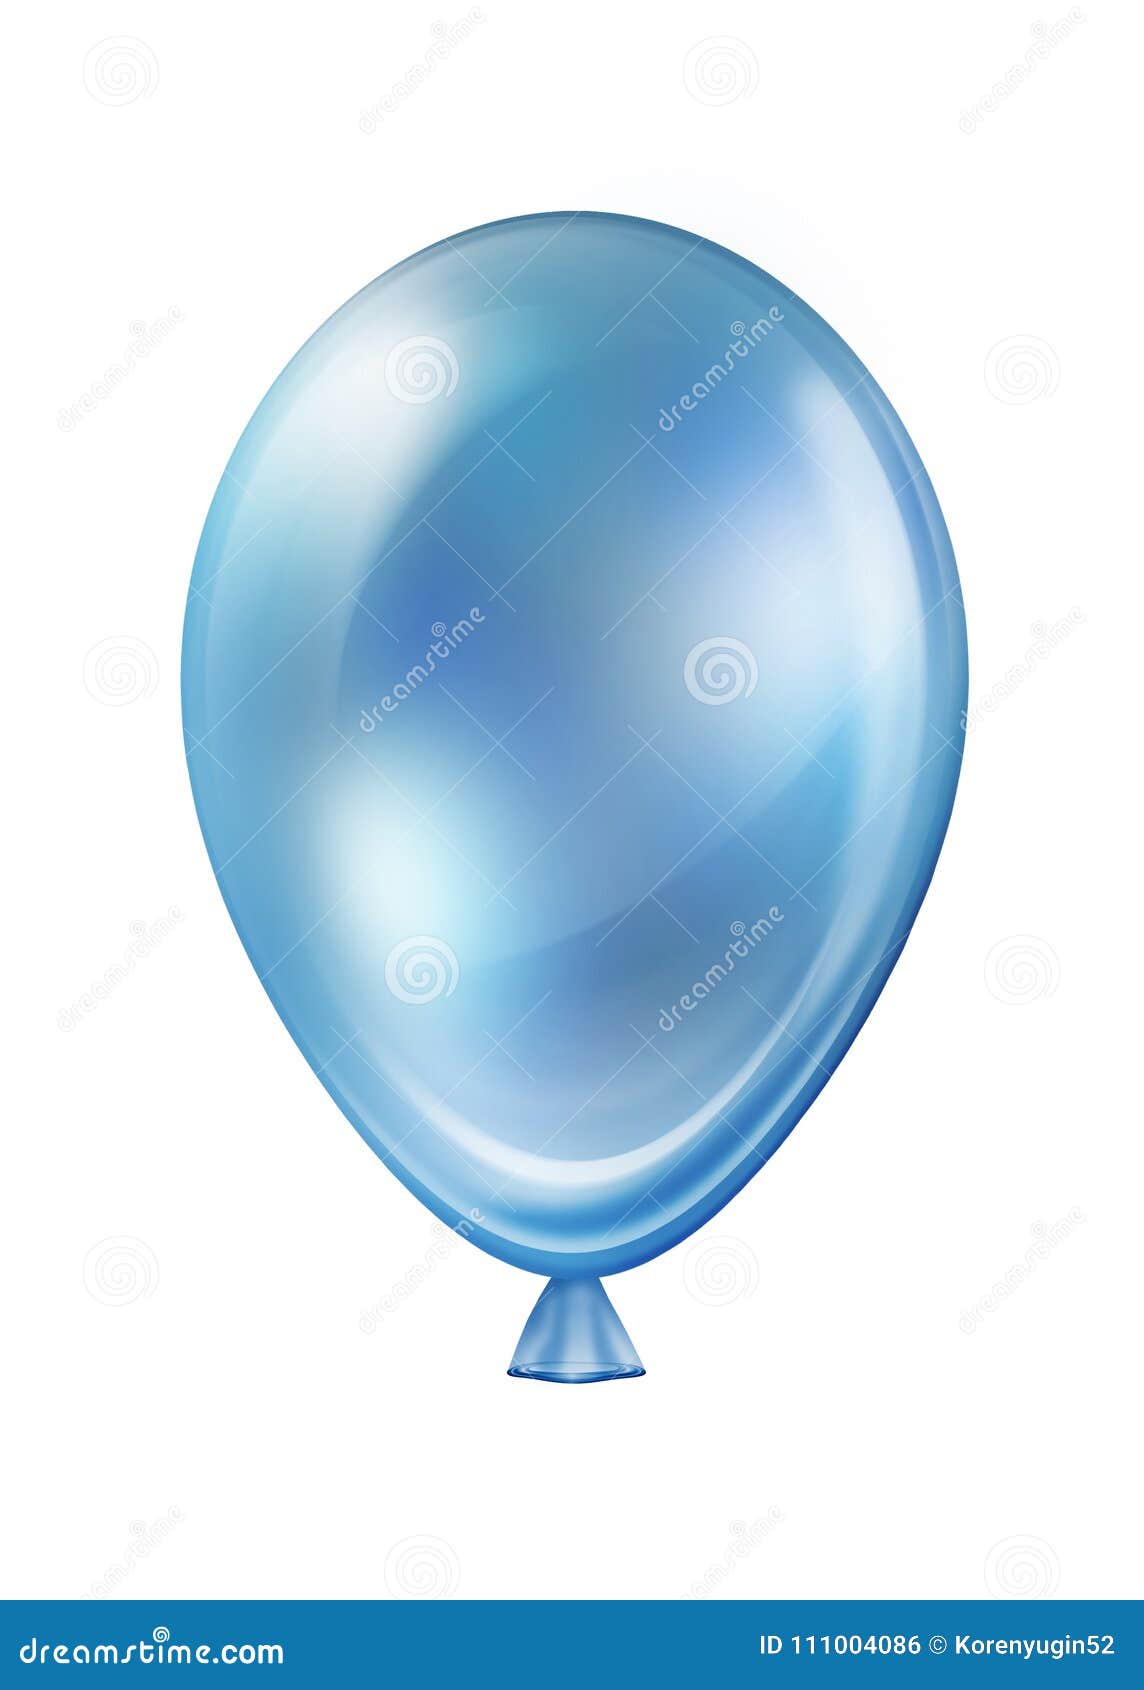 Голубое украшение праздника воздушного шара летания горячего воздуха изолированное на белизне. Голубое украшение праздника воздушного шара летания горячего воздуха изолированное на белой предпосылке, иллюстрации запаса